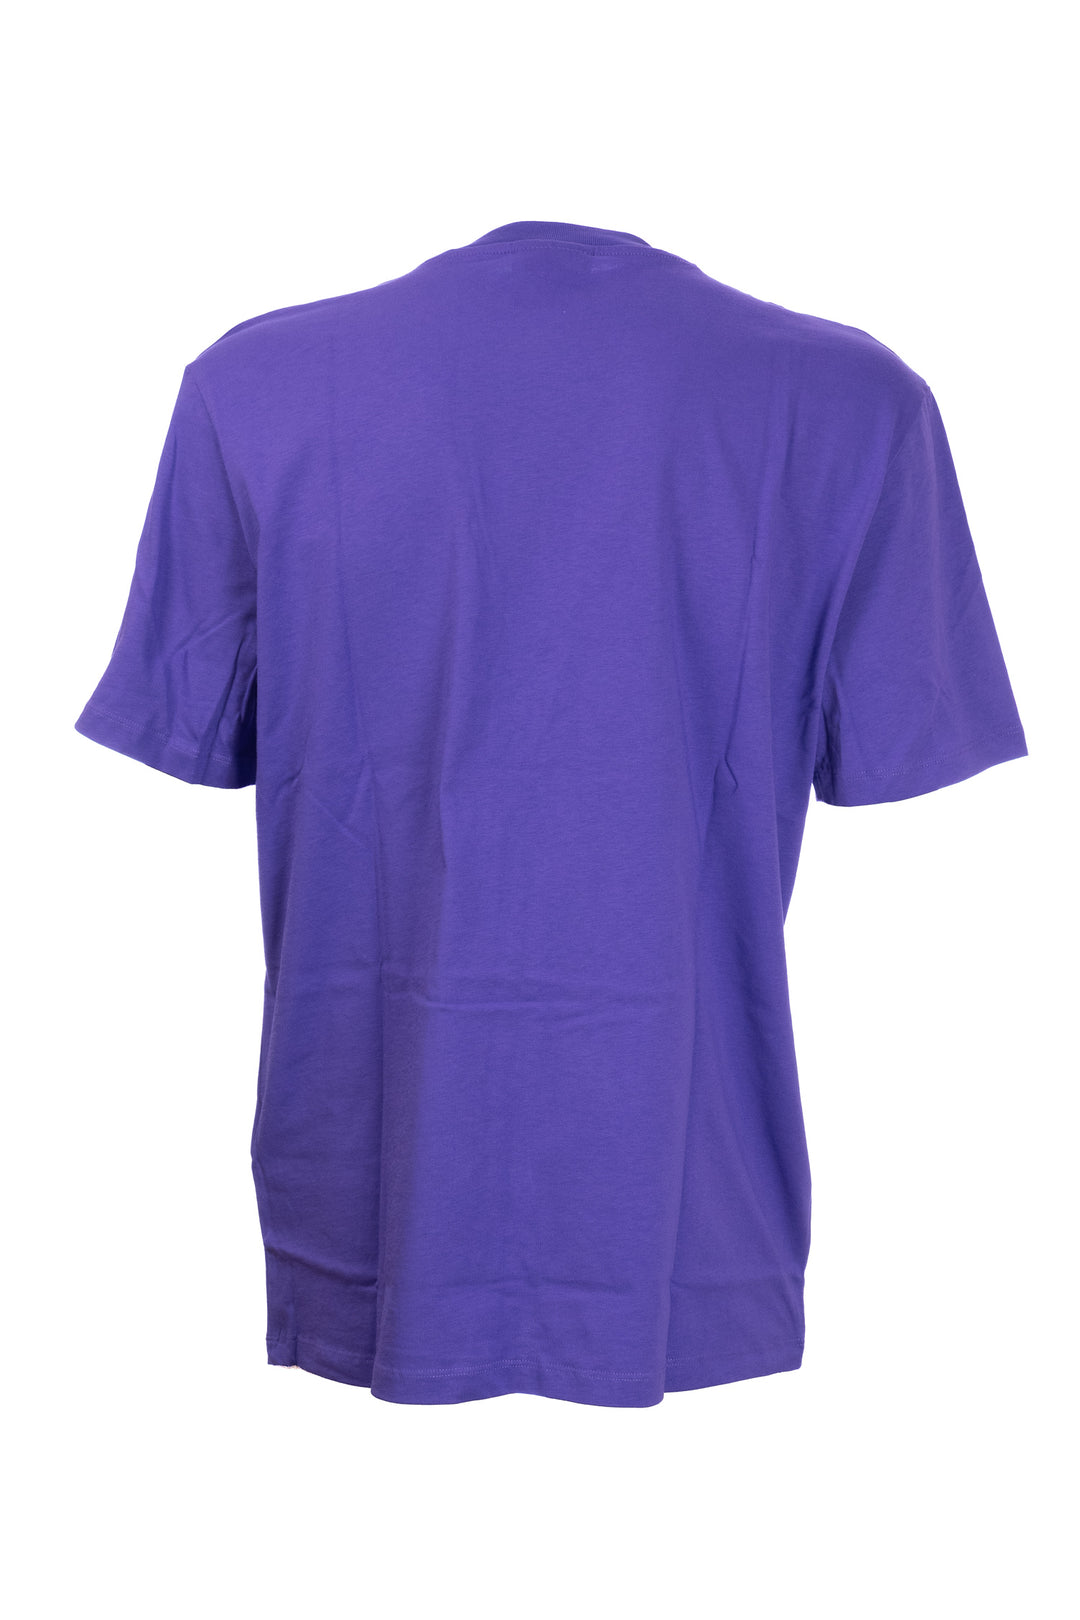 GAELLE T-shirt viola in cotone con logo grande stampato in contrasto - Mancinelli 1954